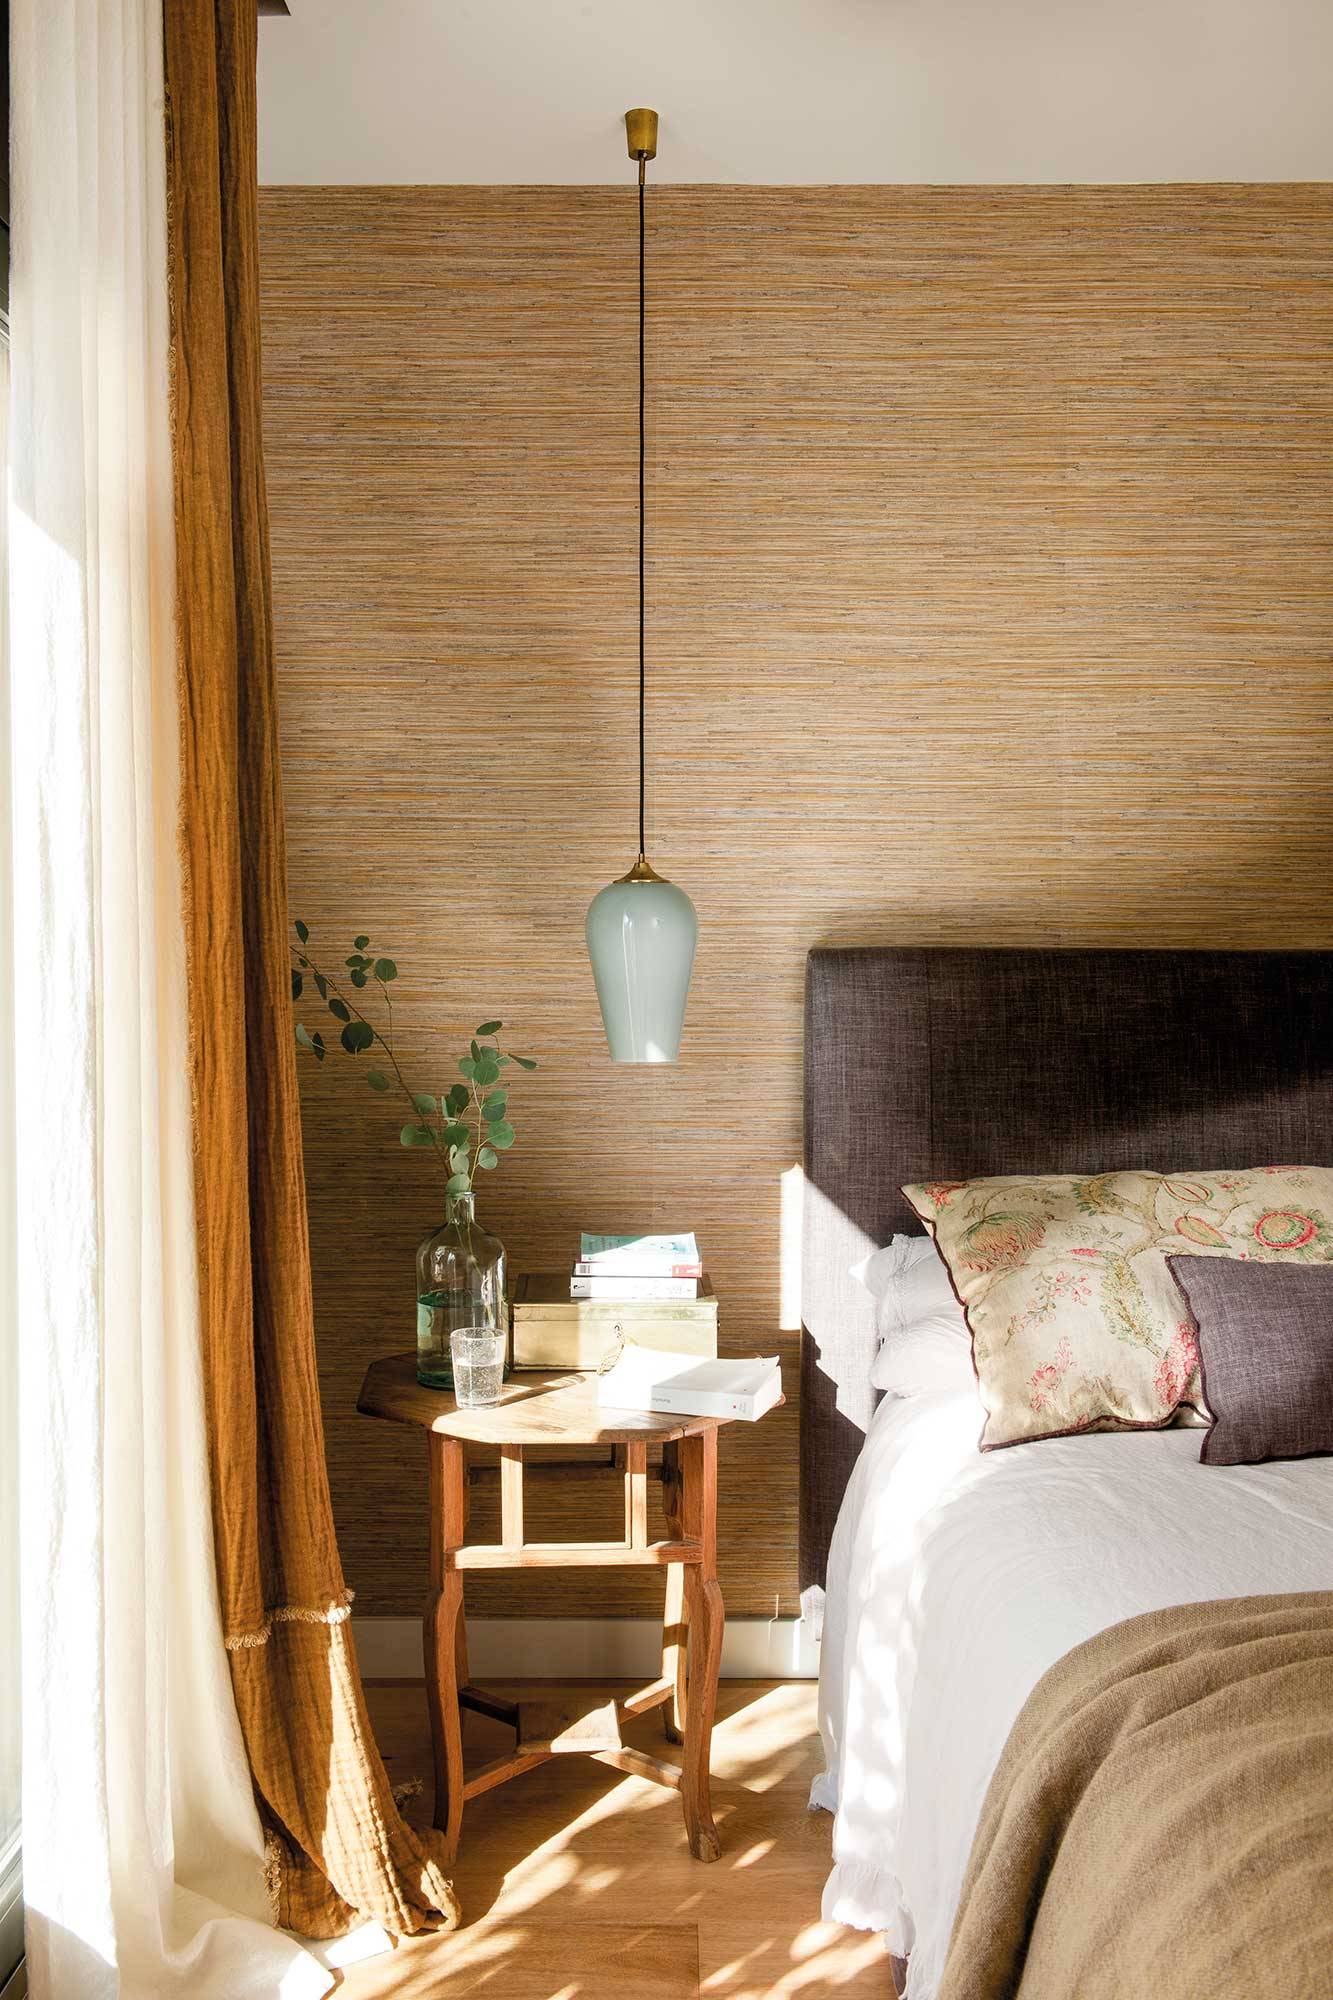 Dormitorio con pared del cabecero tapizada con papel pintado que imita las fibras naturales